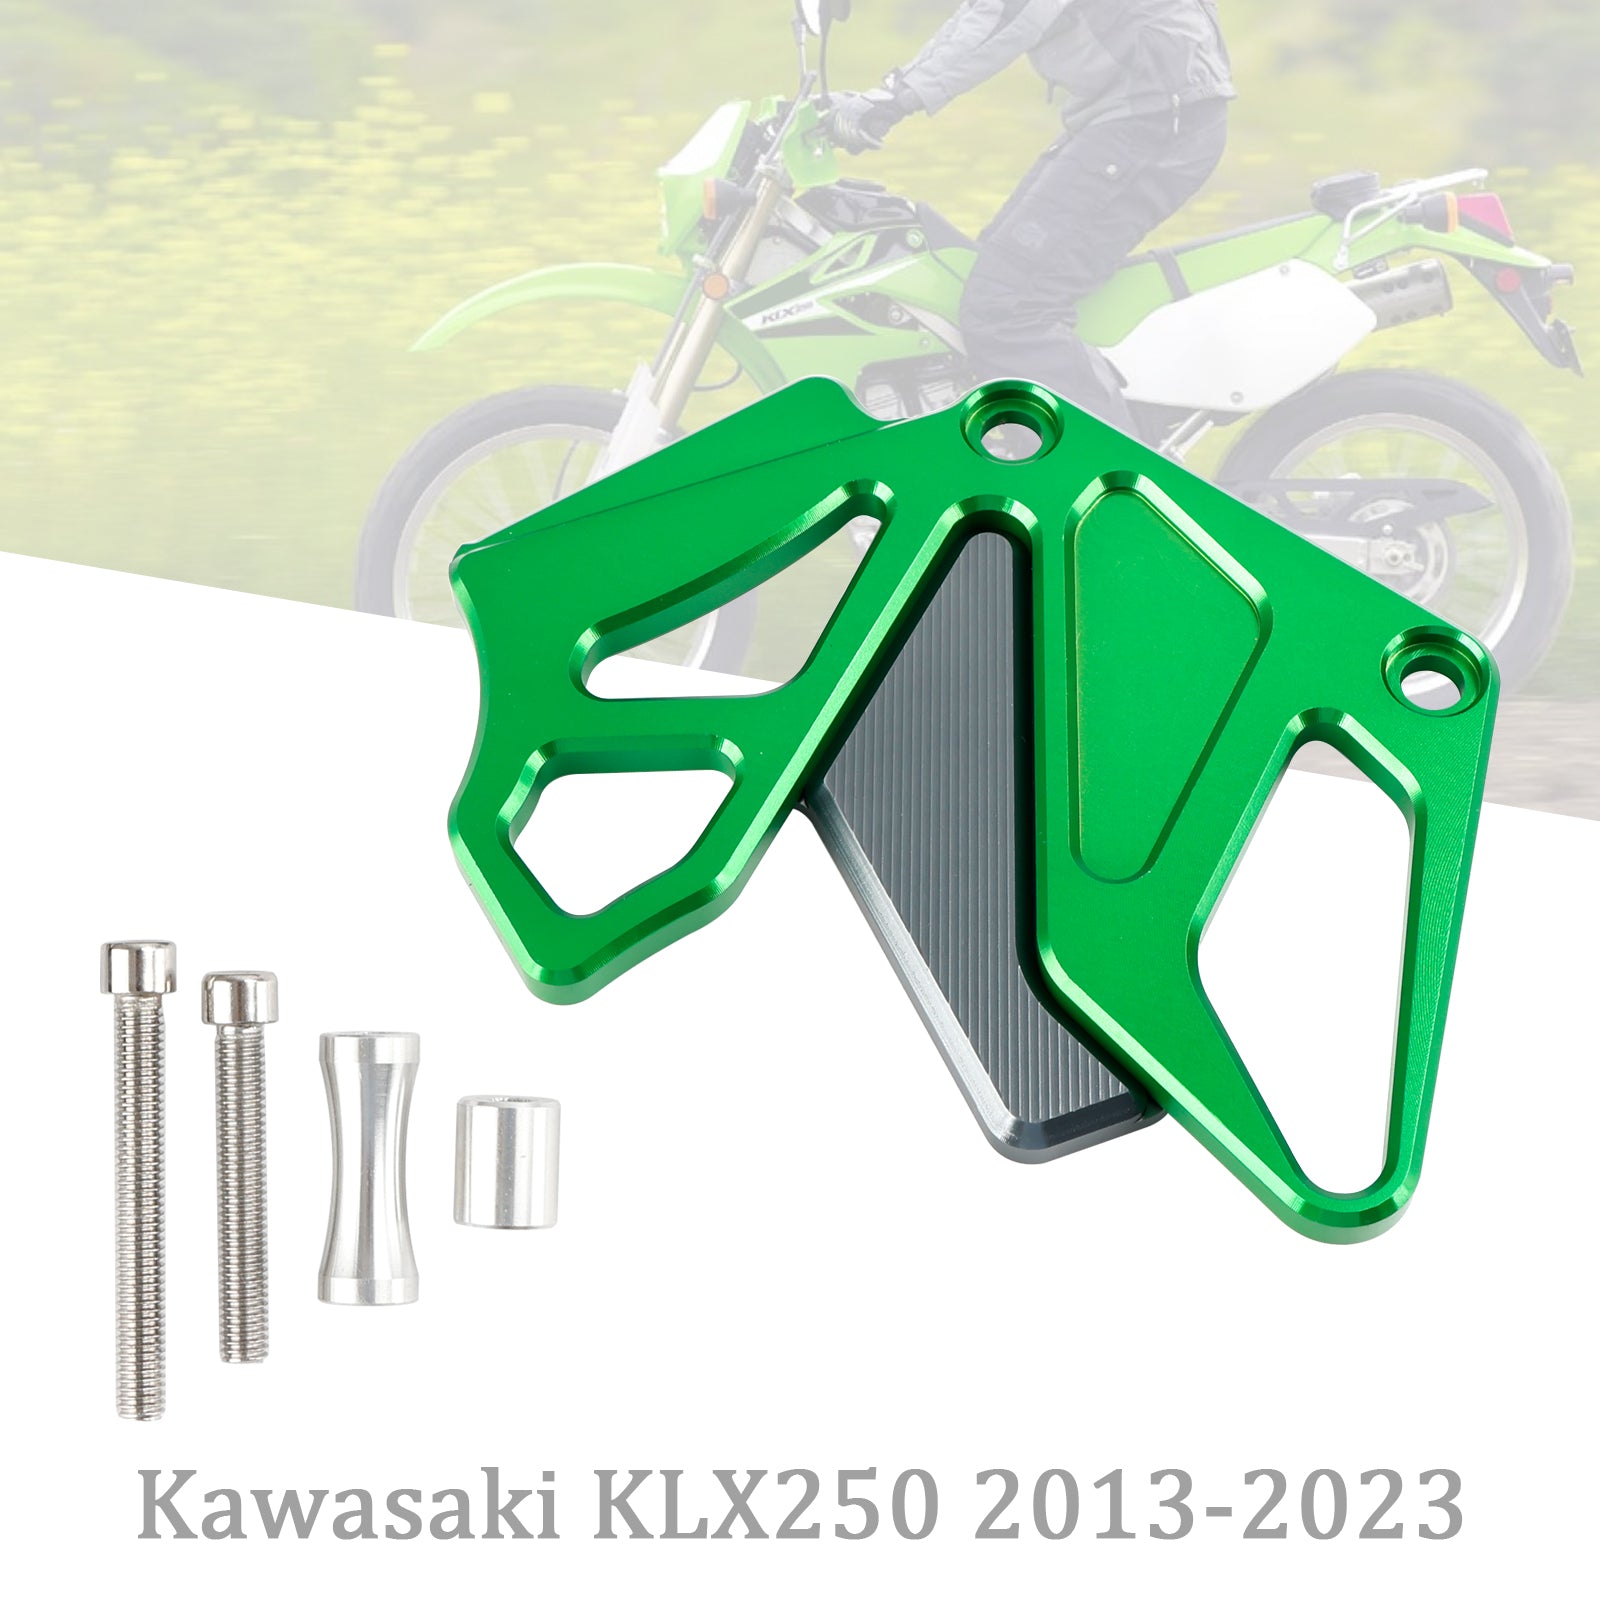 Protezione protezione catena coperchio pignone per Kawasaki KLX250 2013-2023